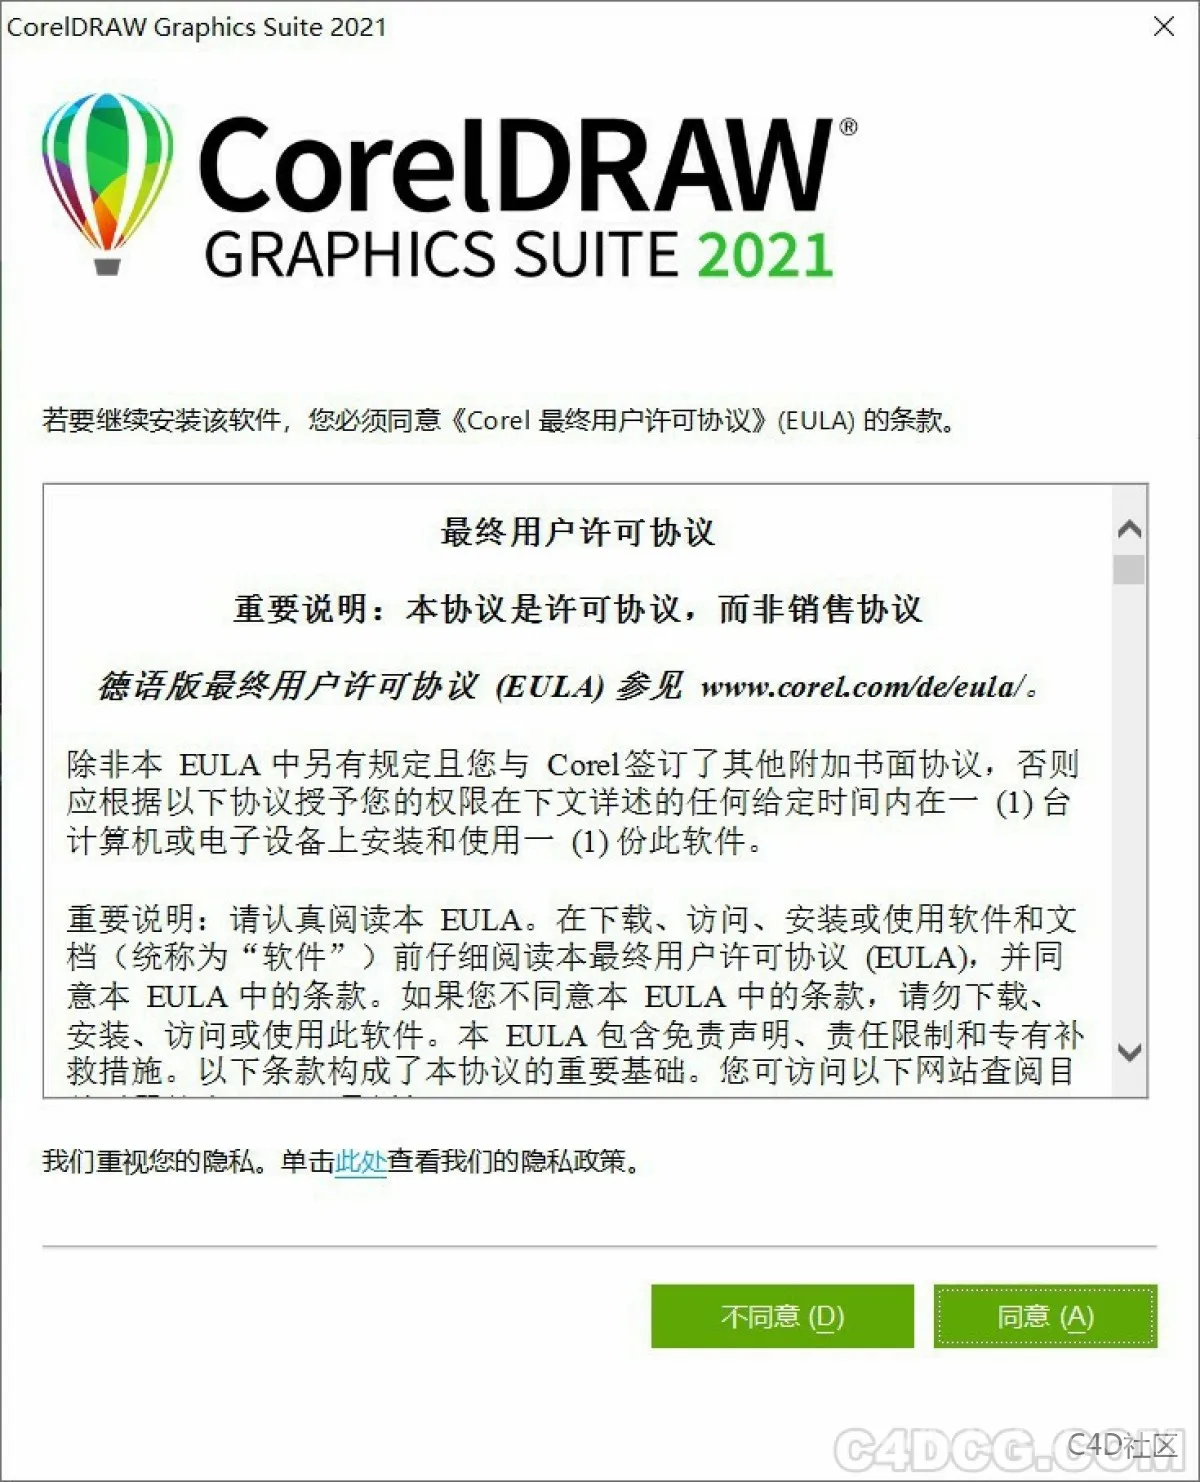 Coredraw 2021 4同意许可条约